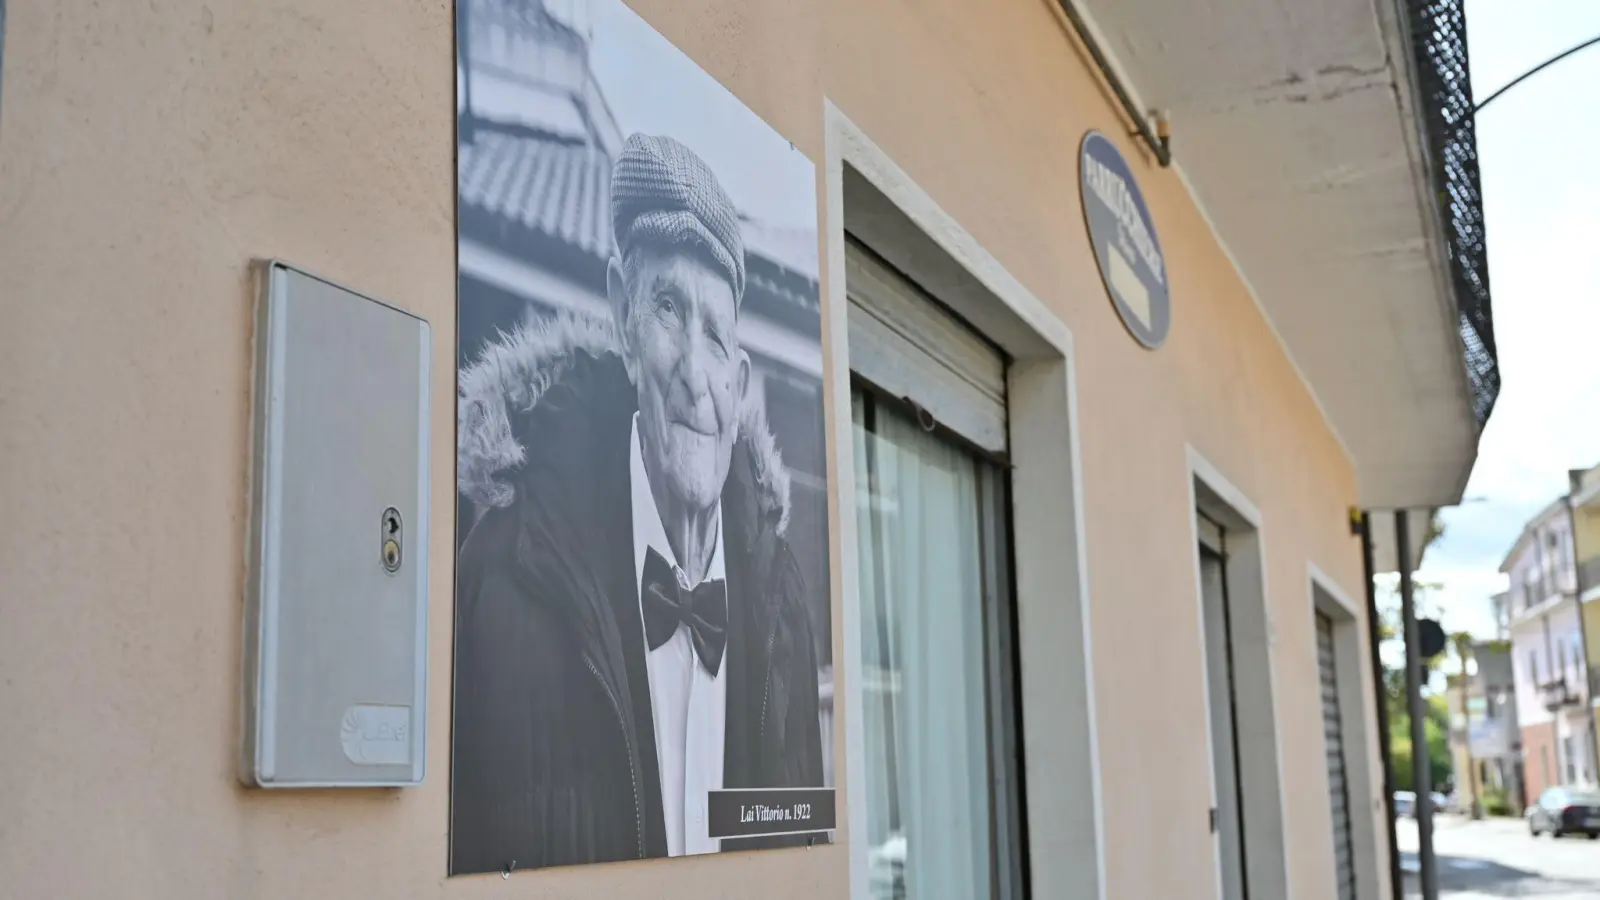 An der Fassade der Häuserin Perdasdefogu hängen Schwarz-Weiß-Fotos der Hundertjährigen aus dem Dorf mit deren Namen und Geburtsjahr. Auf diesem Bild ist Vittorio Lai zu sehen. (Foto: Johannes Neudecker/dpa)